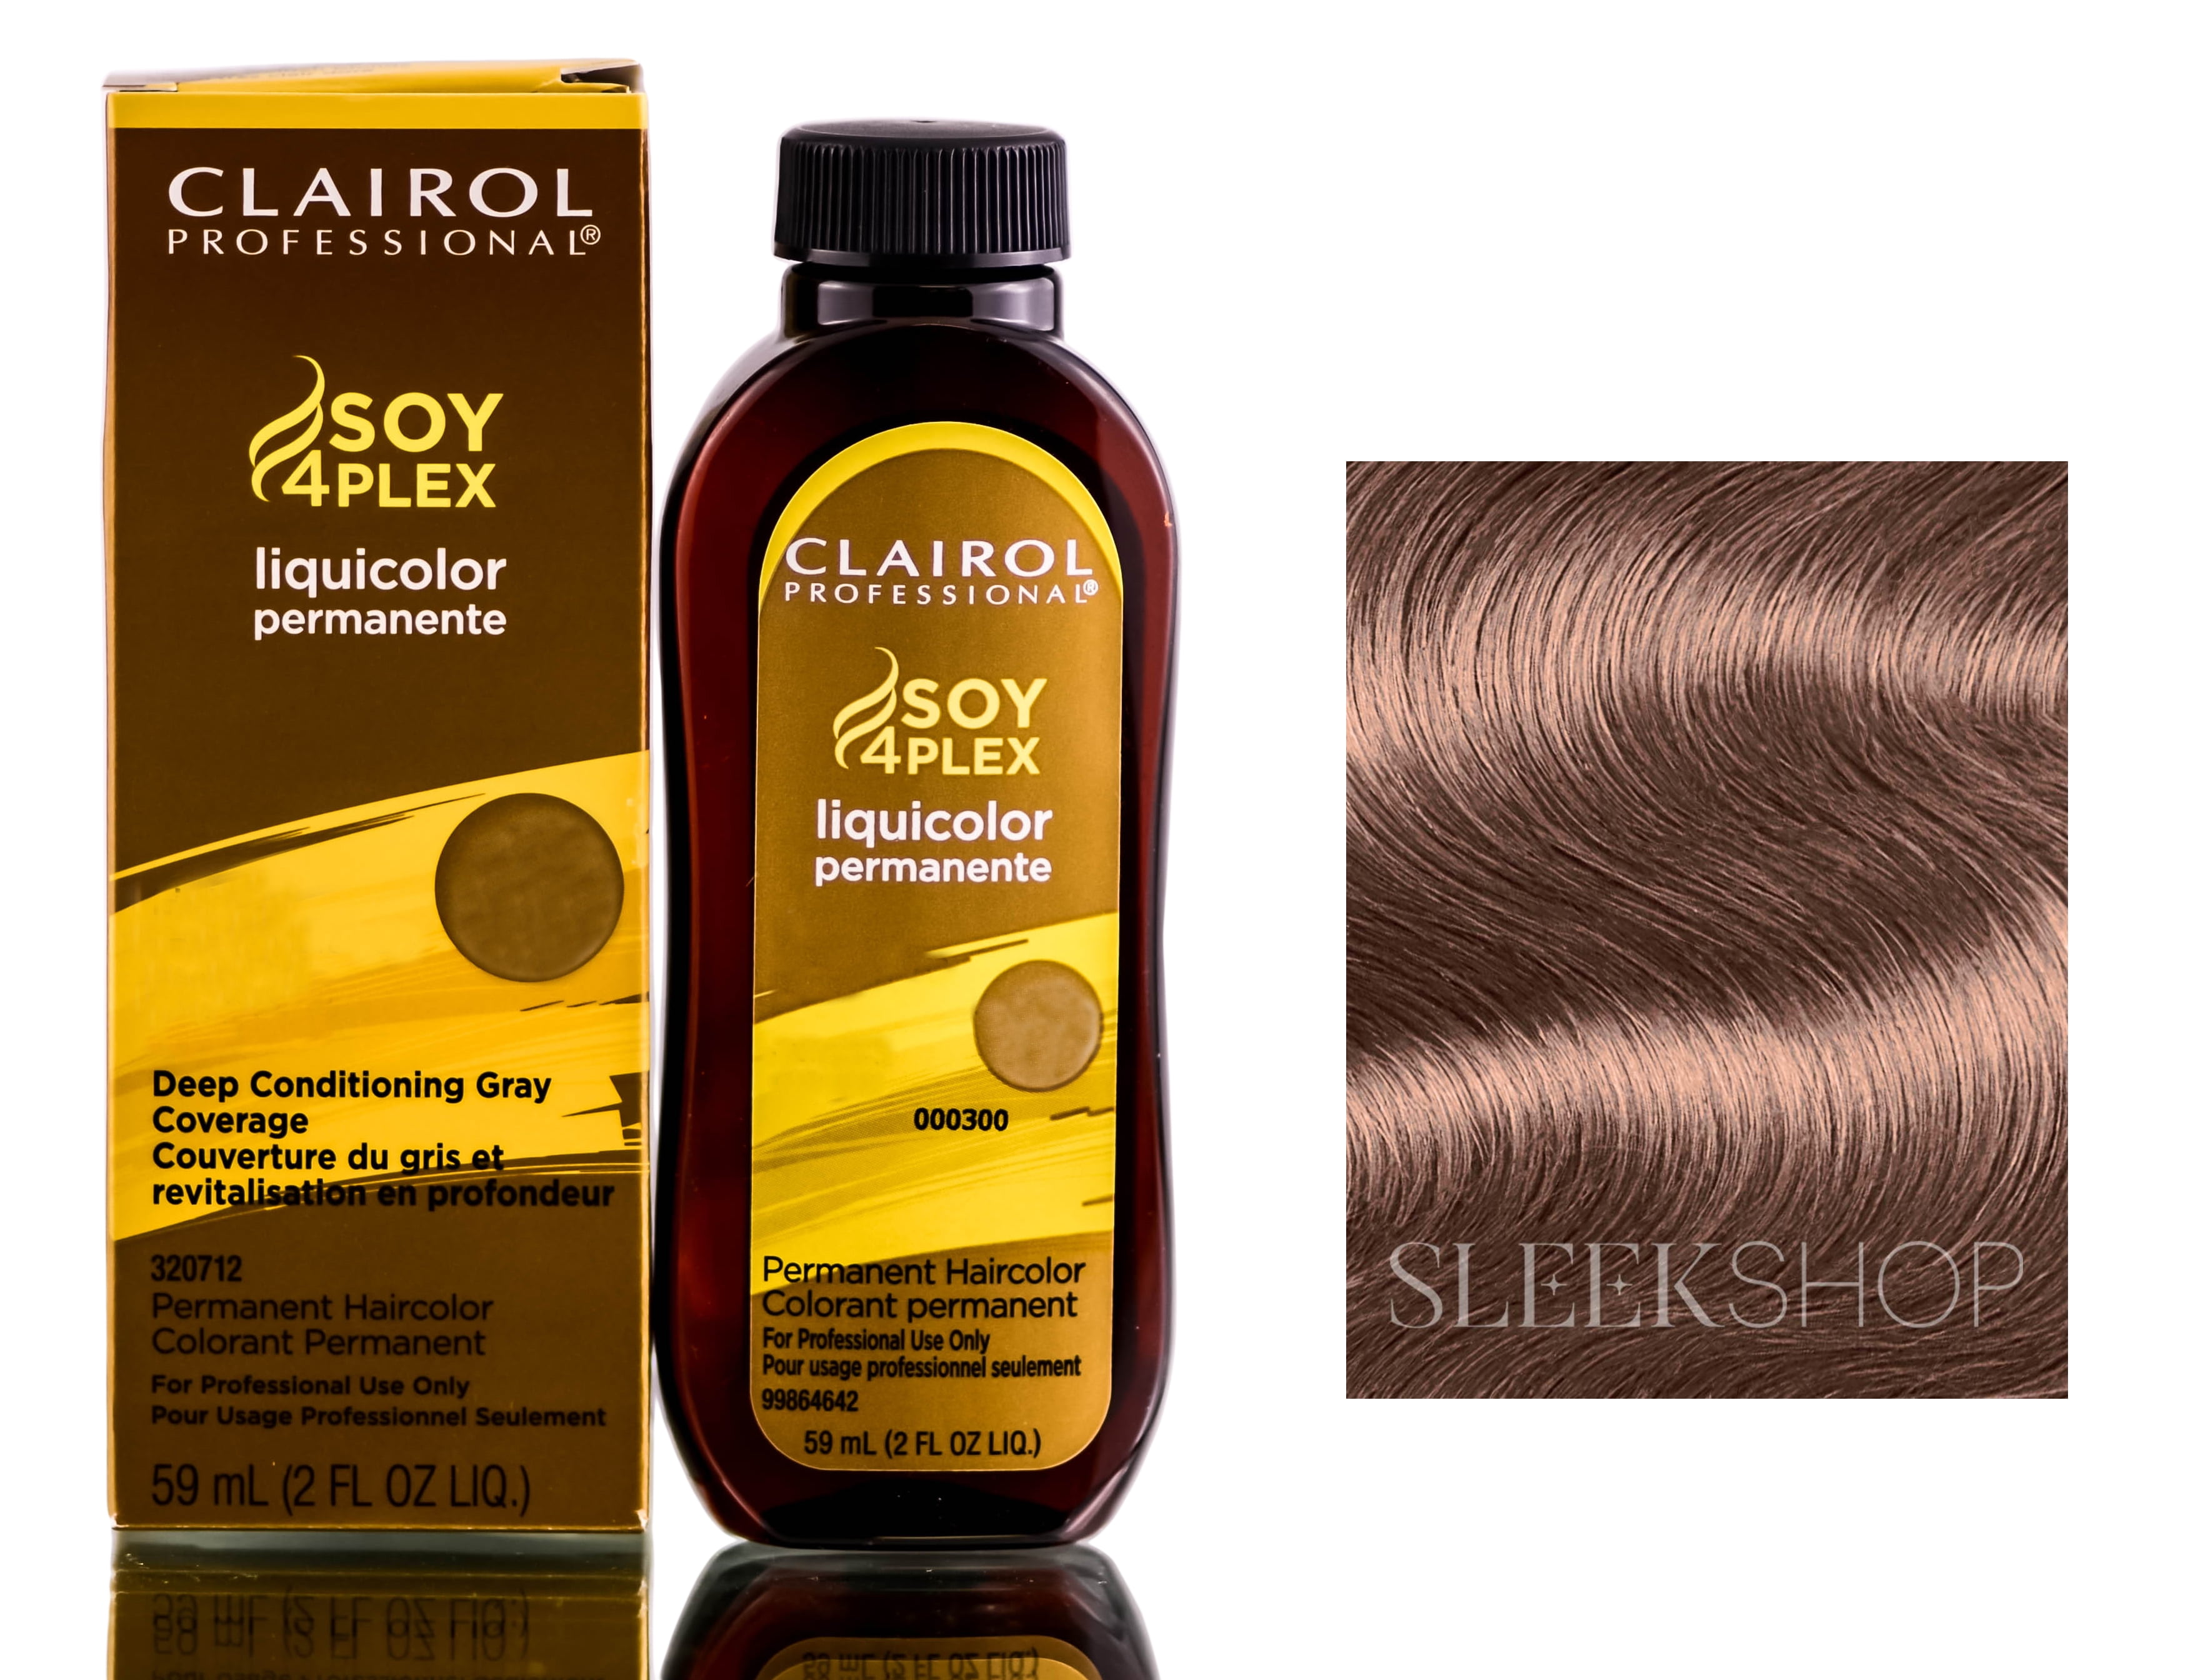 8. Clairol Professional Soy4Plex Liquicolor Permanent Hair Color, 9AA Lightest Ash Blonde - wide 1